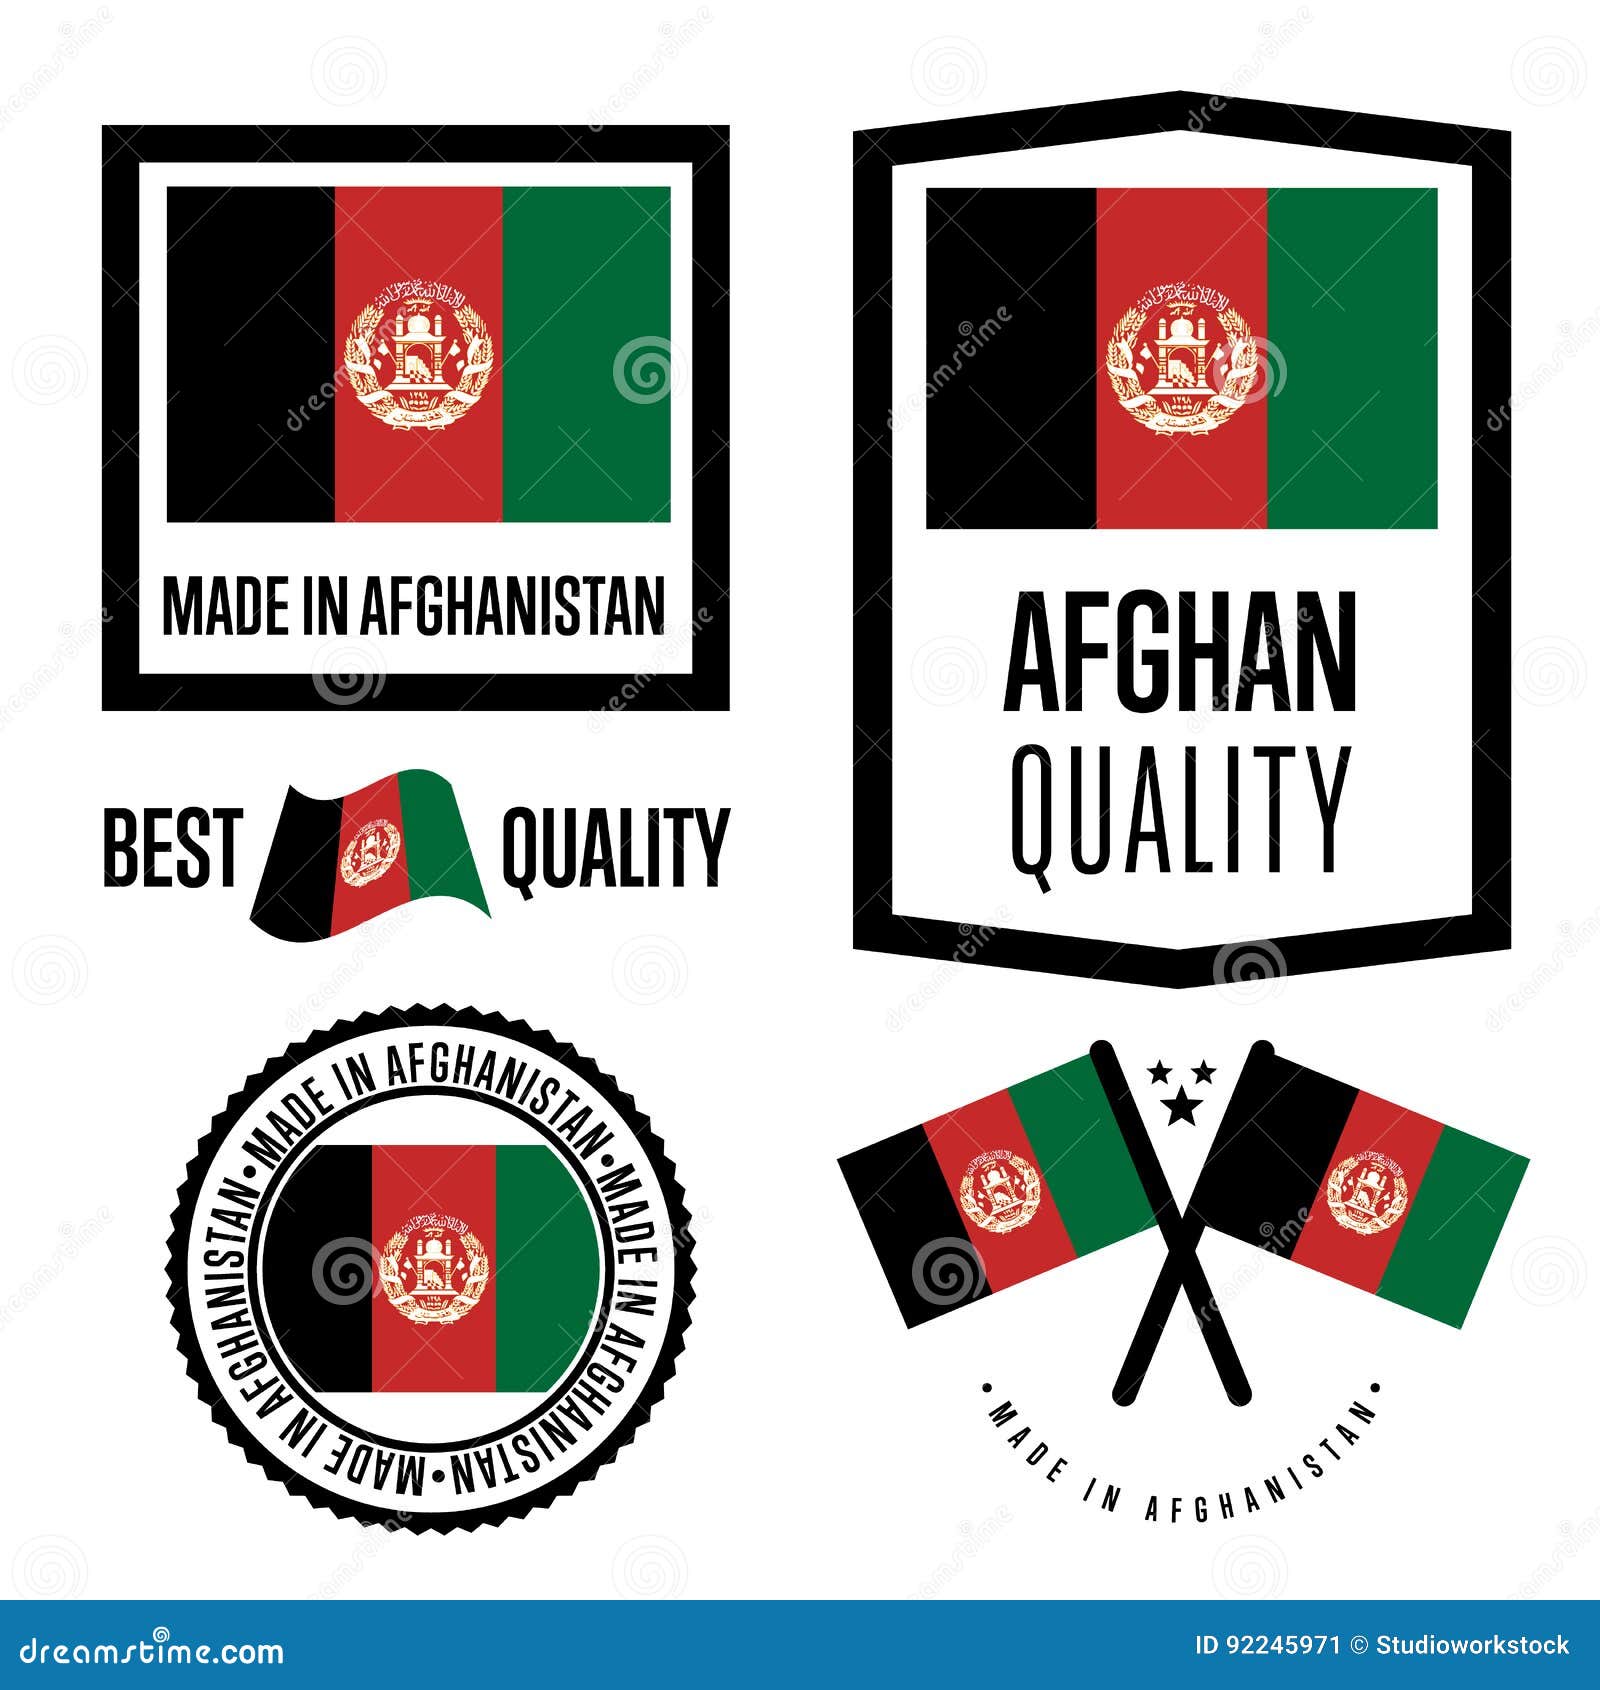 Afghanistan Emblem Stock Illustrations 1 604 Afghanistan Emblem Stock Illustrations Vectors Clipart Dreamstime